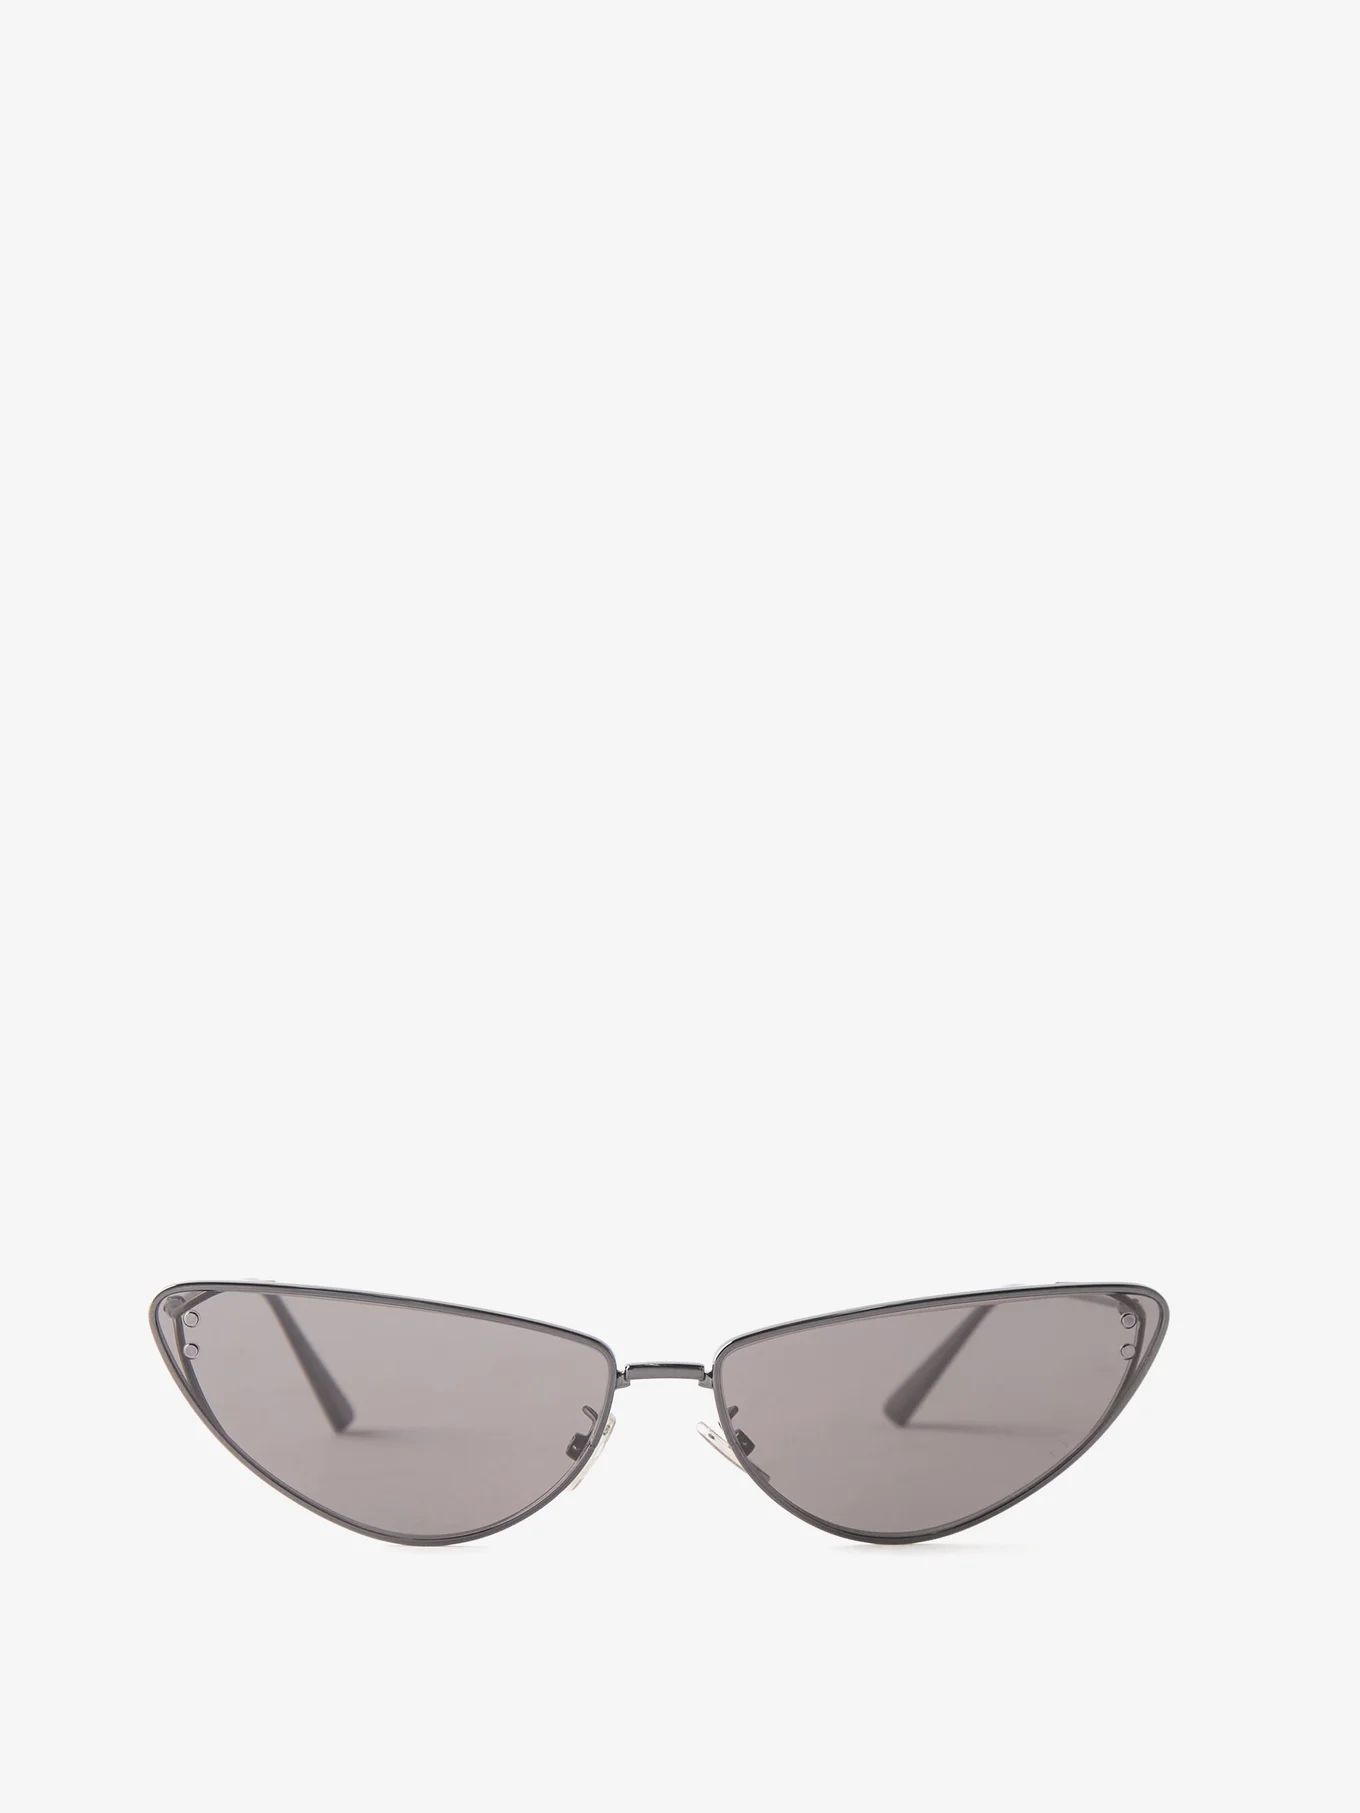 MissDior B1U cat-eye metal sunglasses | Matches (US)